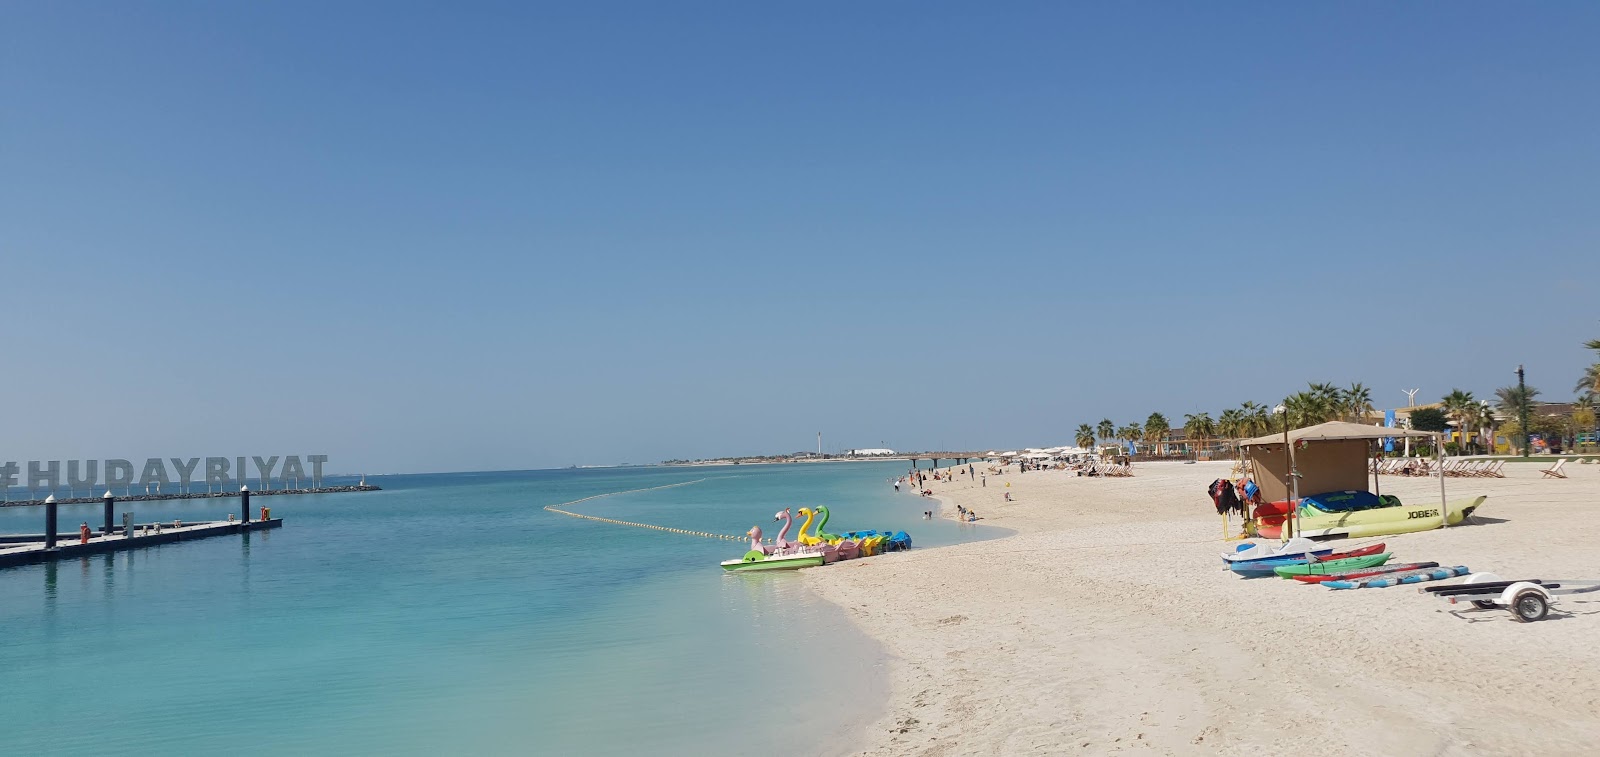 Al Hudayriat Beach'in fotoğrafı imkanlar alanı